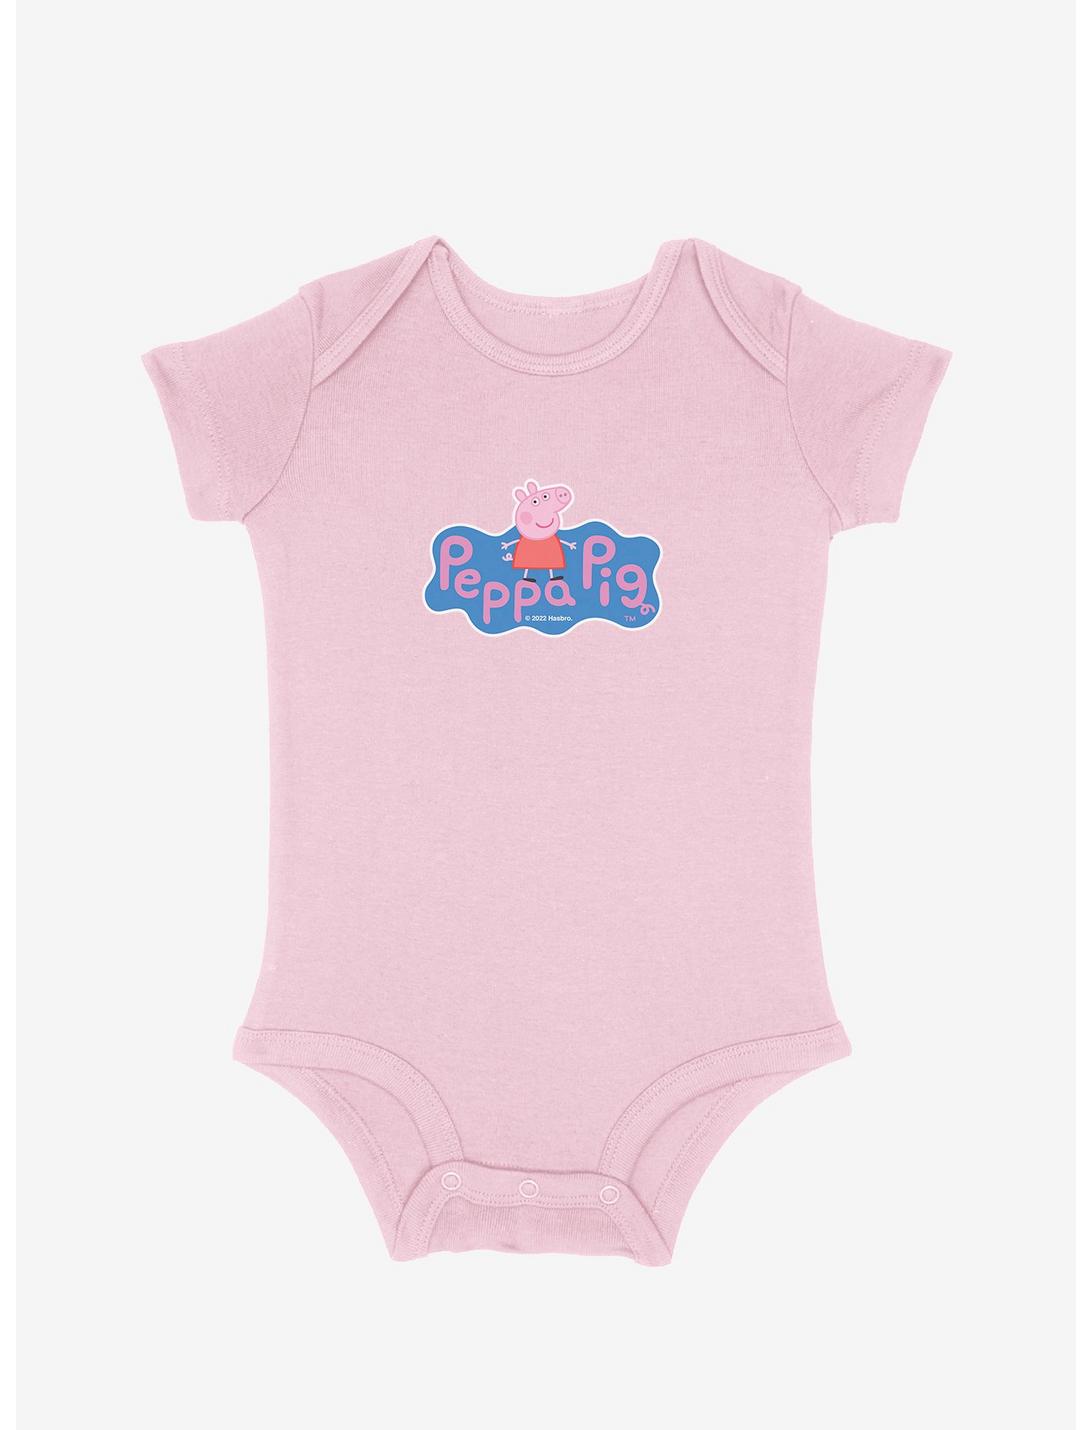 Peppa Pig Portrait Logo Infant Bodysuit, SOFT PINK, hi-res